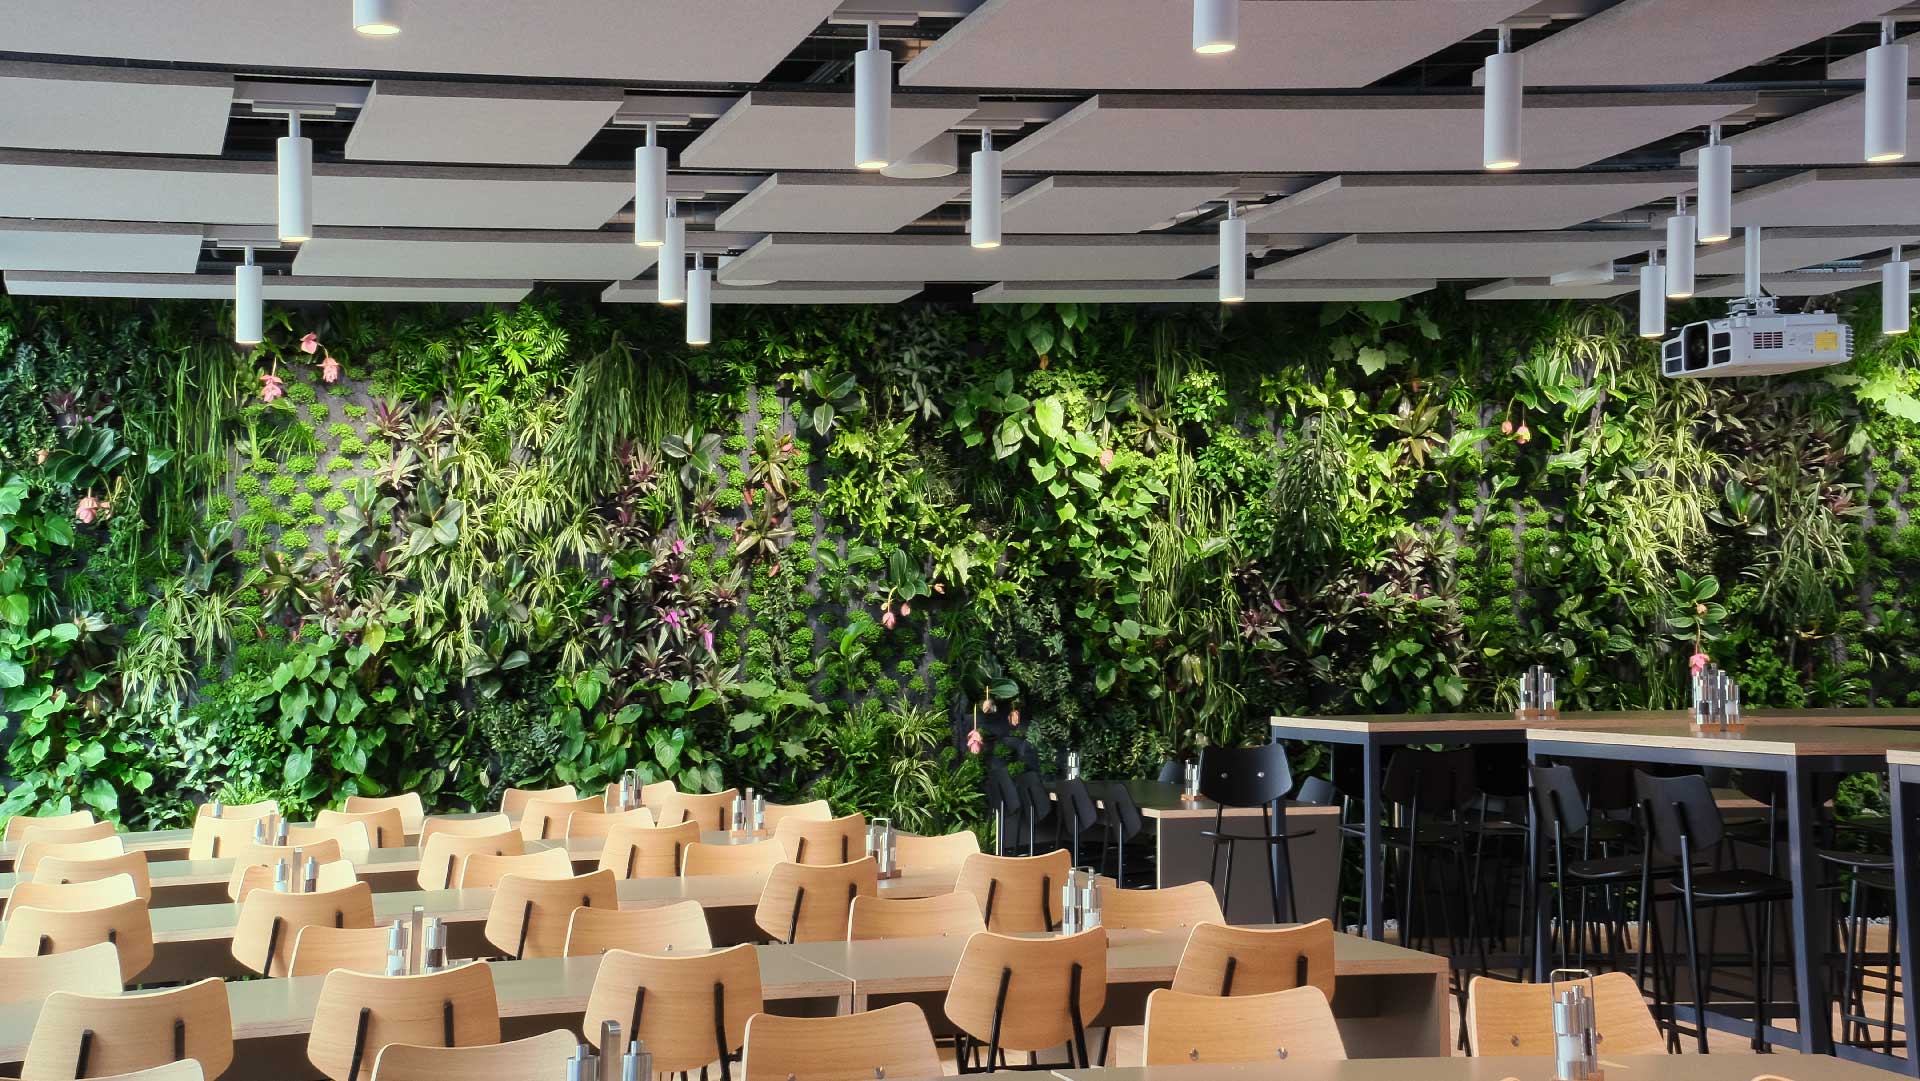 modernes restaurant-interieur mit reihen von holztischen und -stühlen, einem barbereich und einer großen pflanzenwand an der wand.